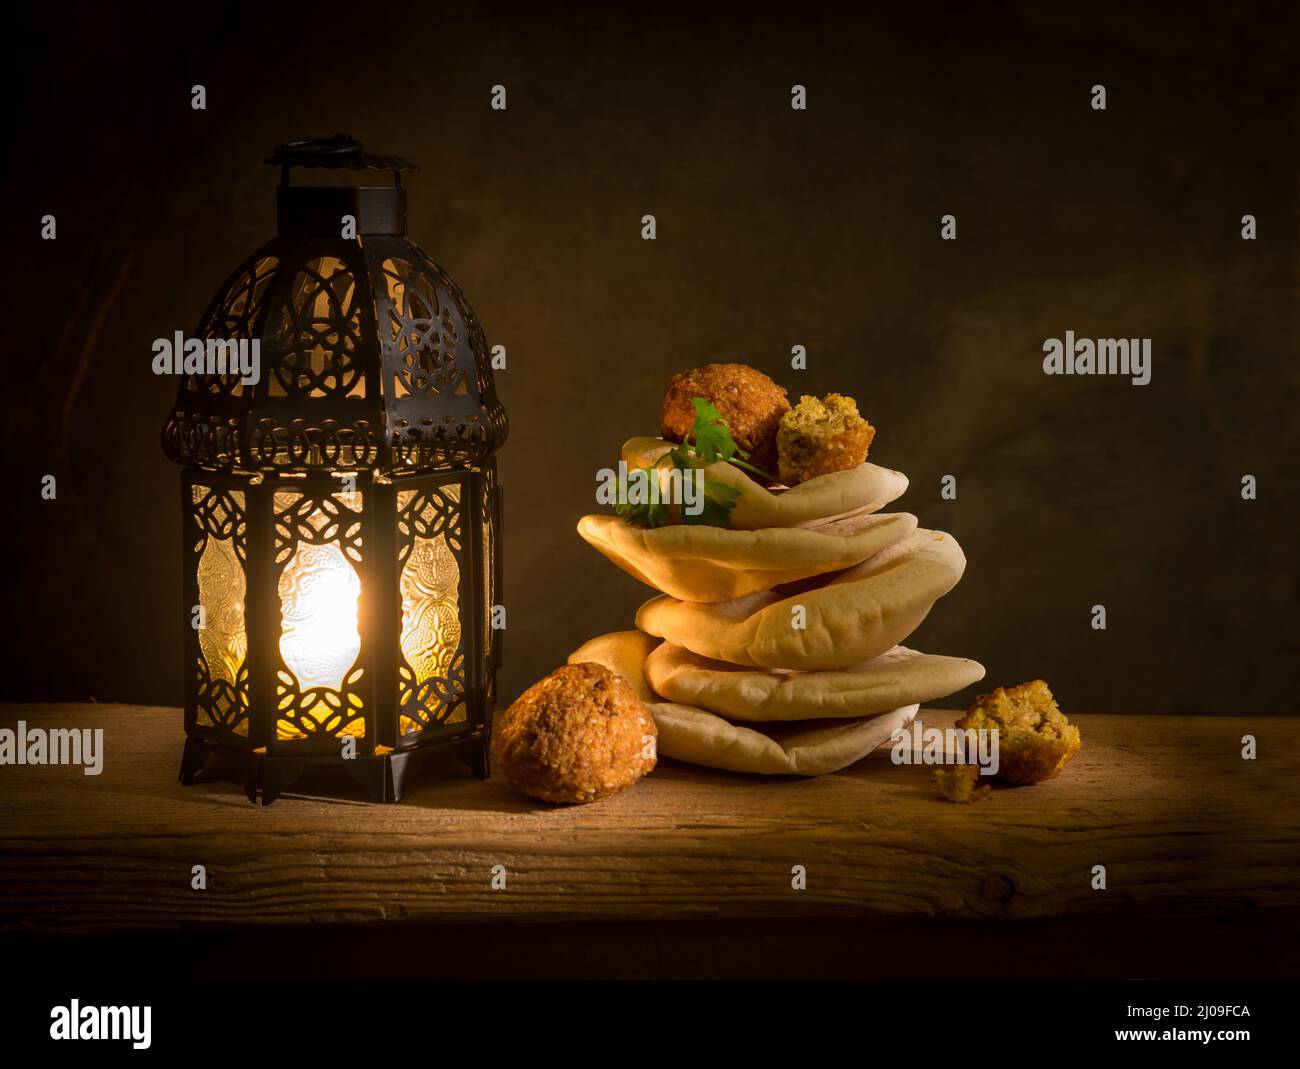 Falafel und Kuboos mit Ramadan-Laterne. Traditionelle arabische Laterne mit nahöstlicher Küche oder Speisen. Stockfoto